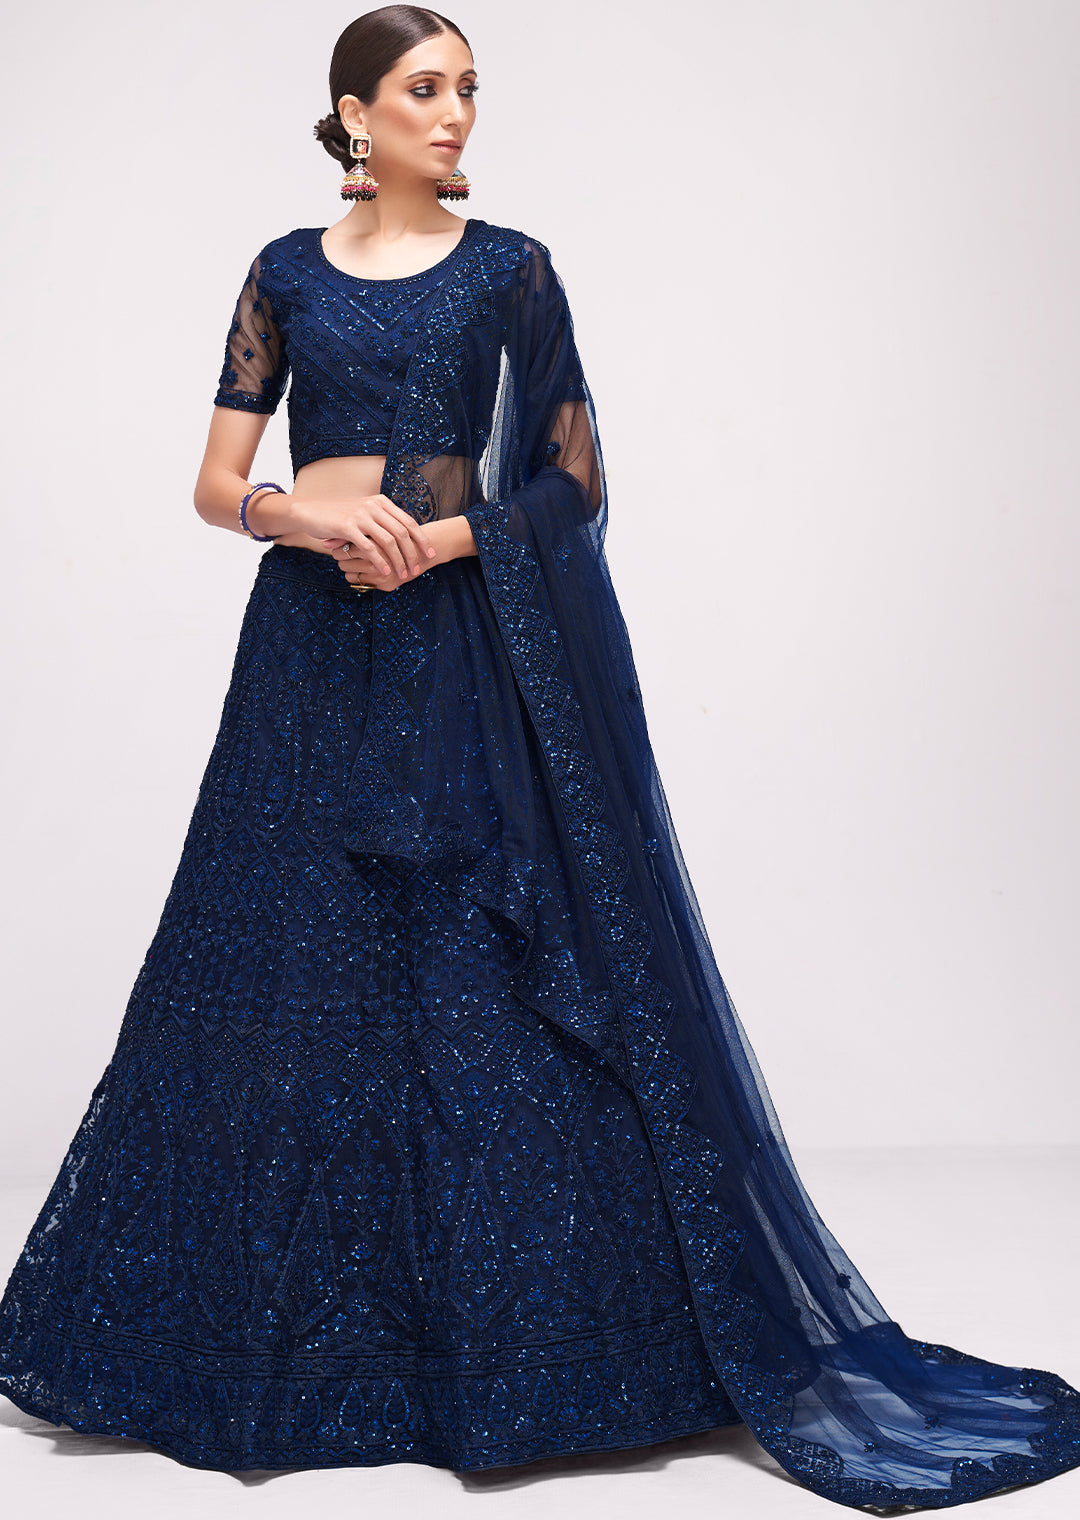 Navy Blue Girl Designer Lehenga Choli With Appealing Work – Palkhi Fashion